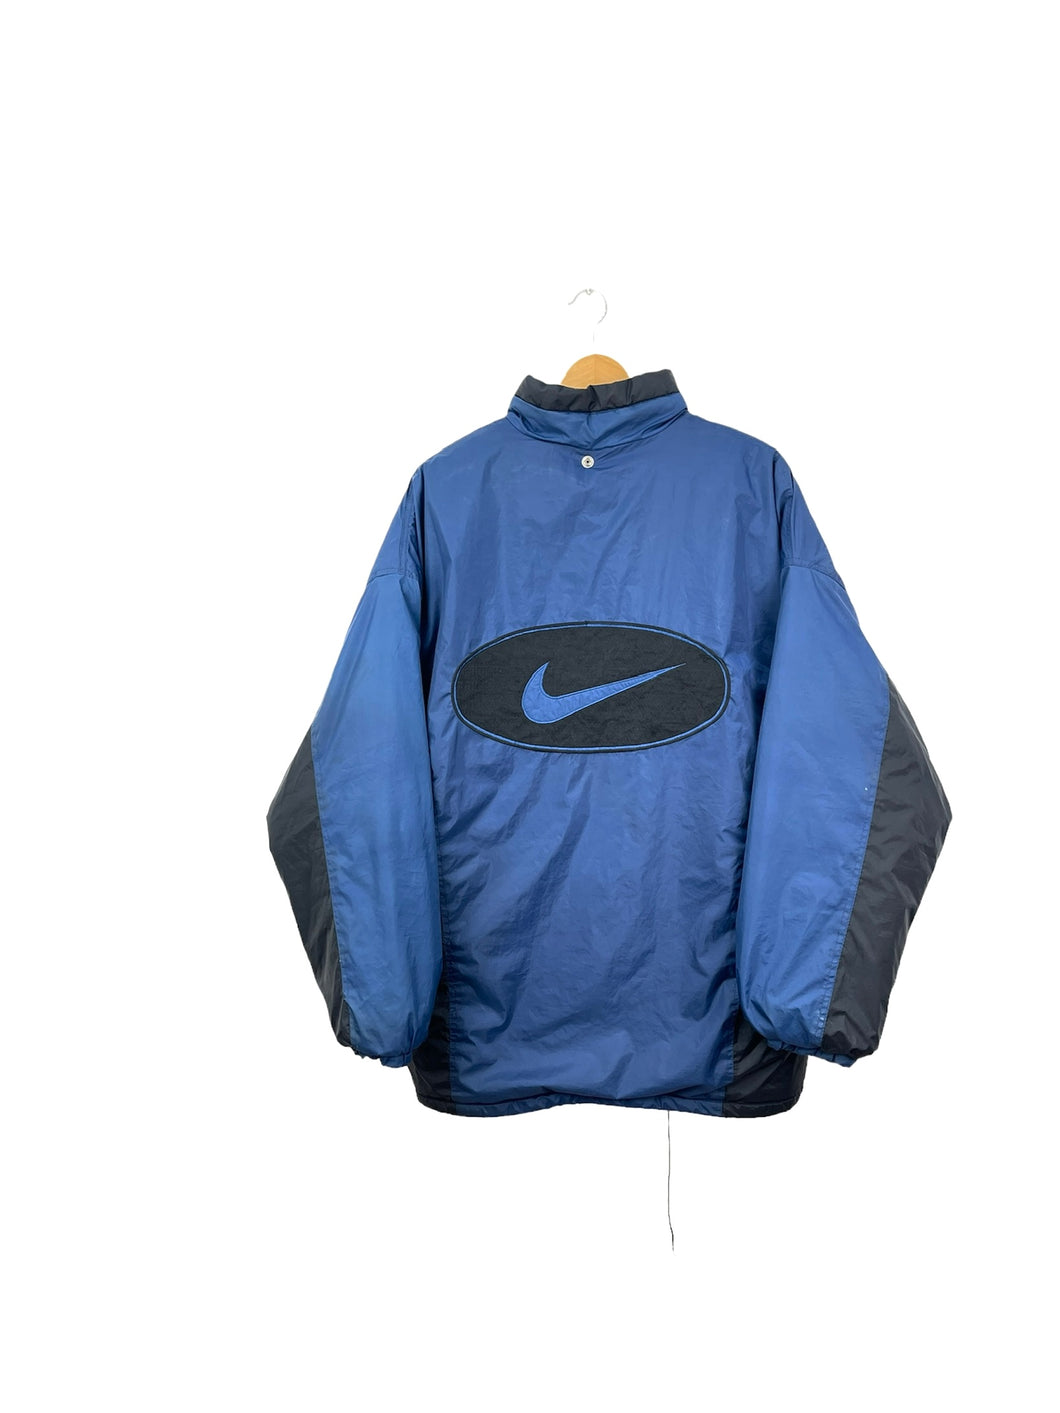 Nike Coat - Large